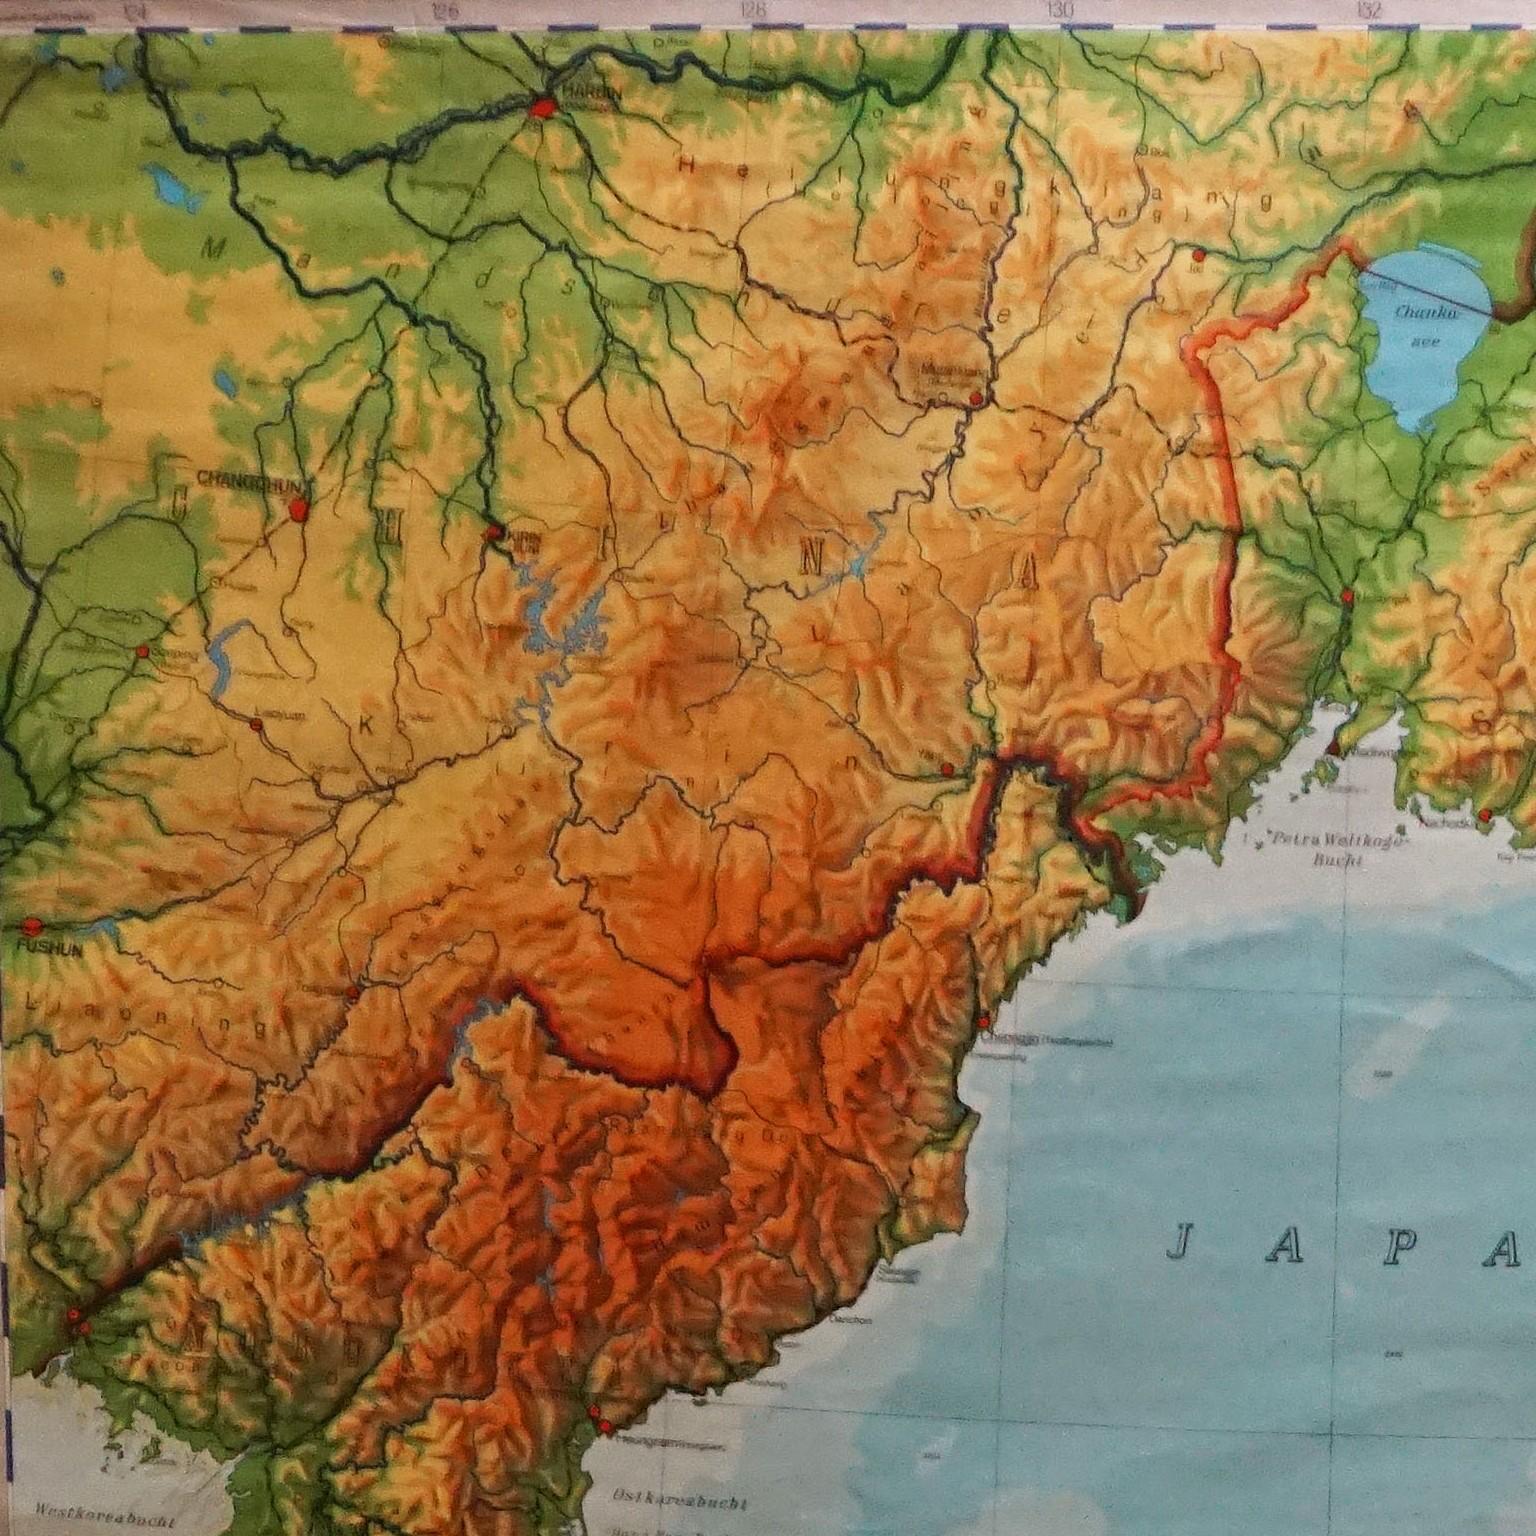 Eine dekorative, ausziehbare Länderkarte, die Japan und Korea zeigt. Herausgegeben von Haack-Paincke Justus Perthes. Farbenfroher Druck auf mit Leinwand verstärktem Papier.
Abmessungen:
Breite 199,50 cm (78,54 Zoll)
Höhe 194 cm (76,38 Zoll)

Die